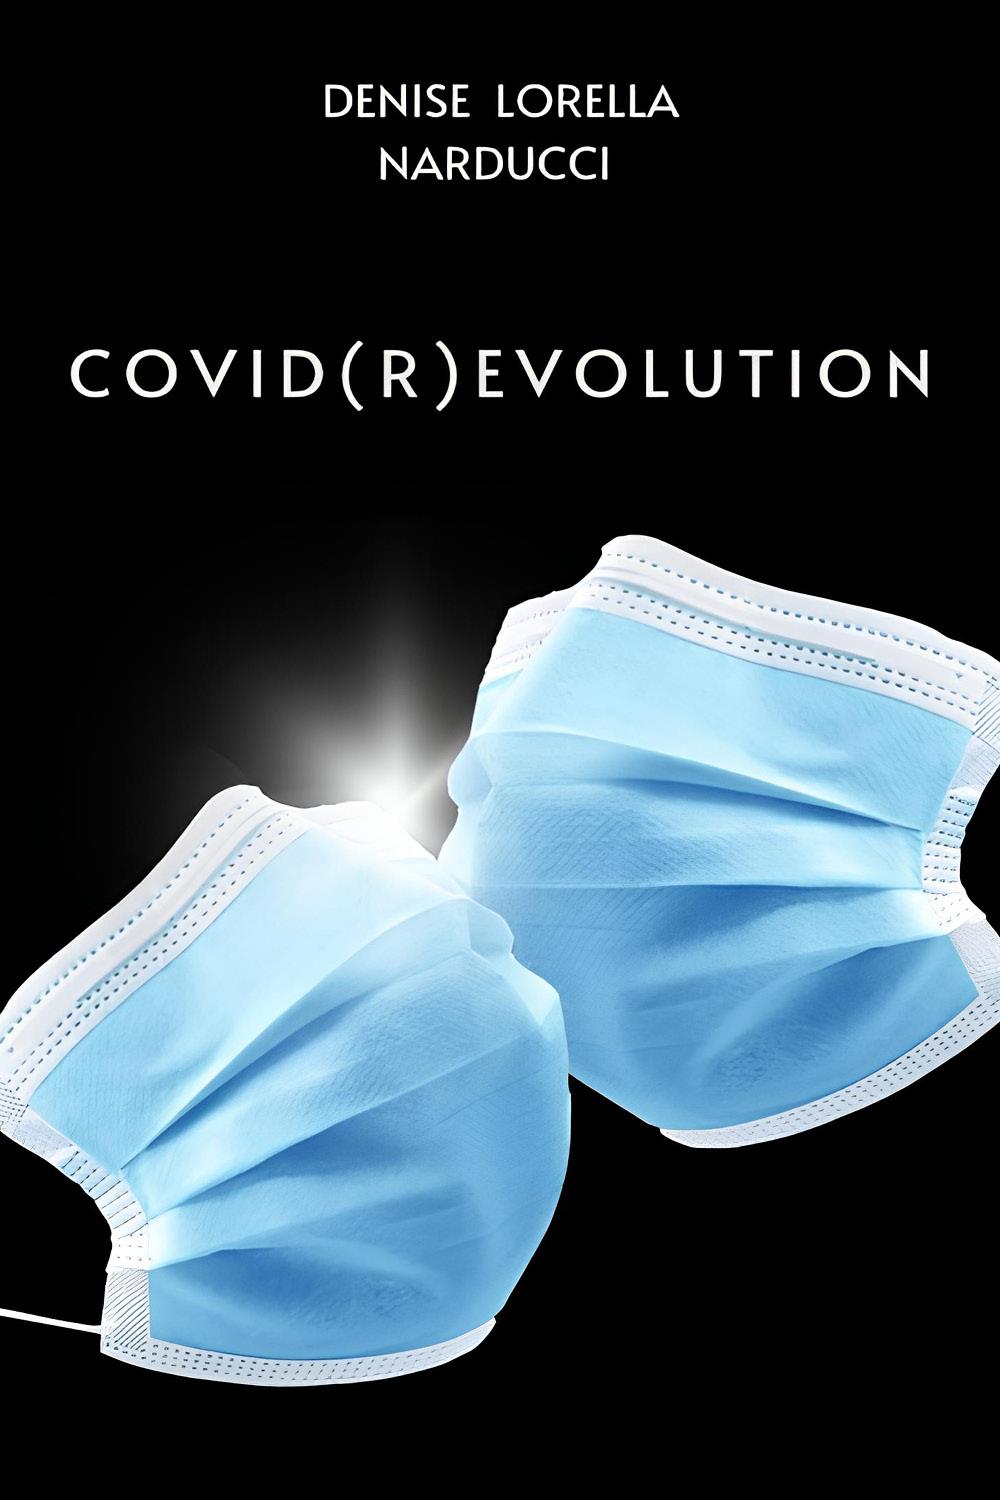 Covid(r)evolution